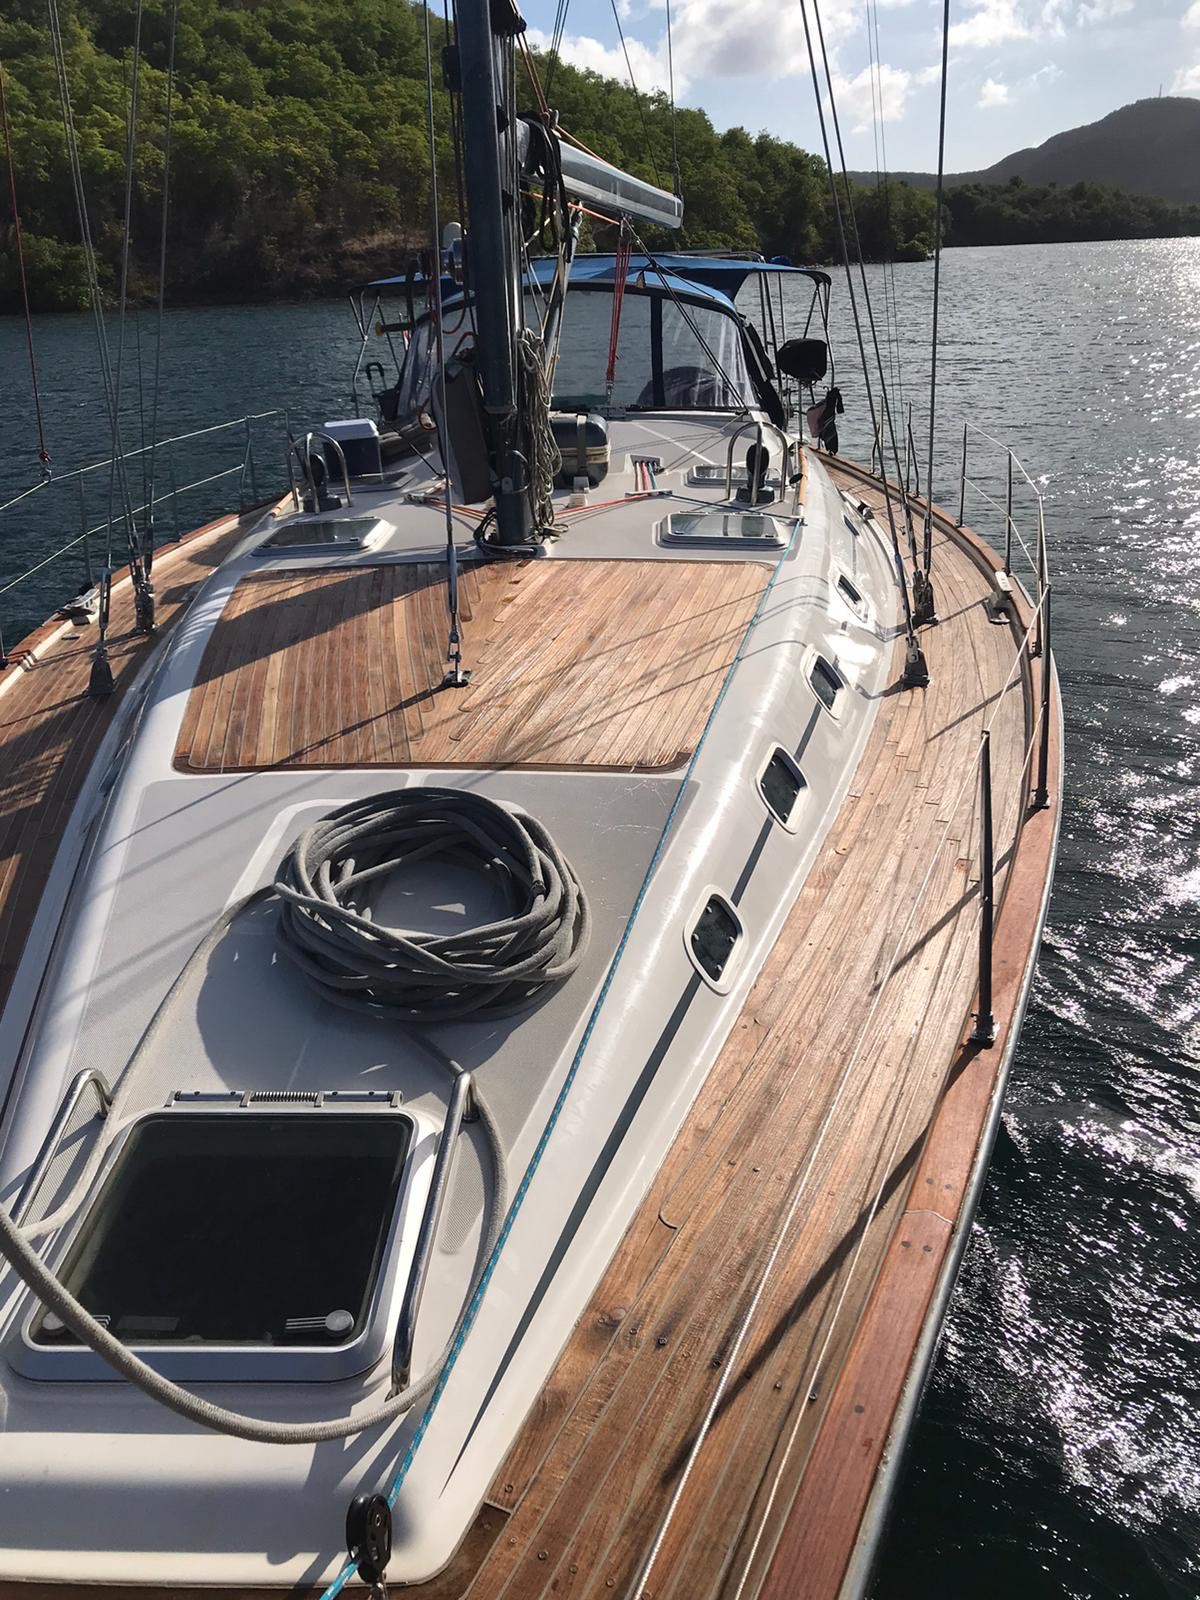 昆达利尼私人游艇-英属维尔京群岛